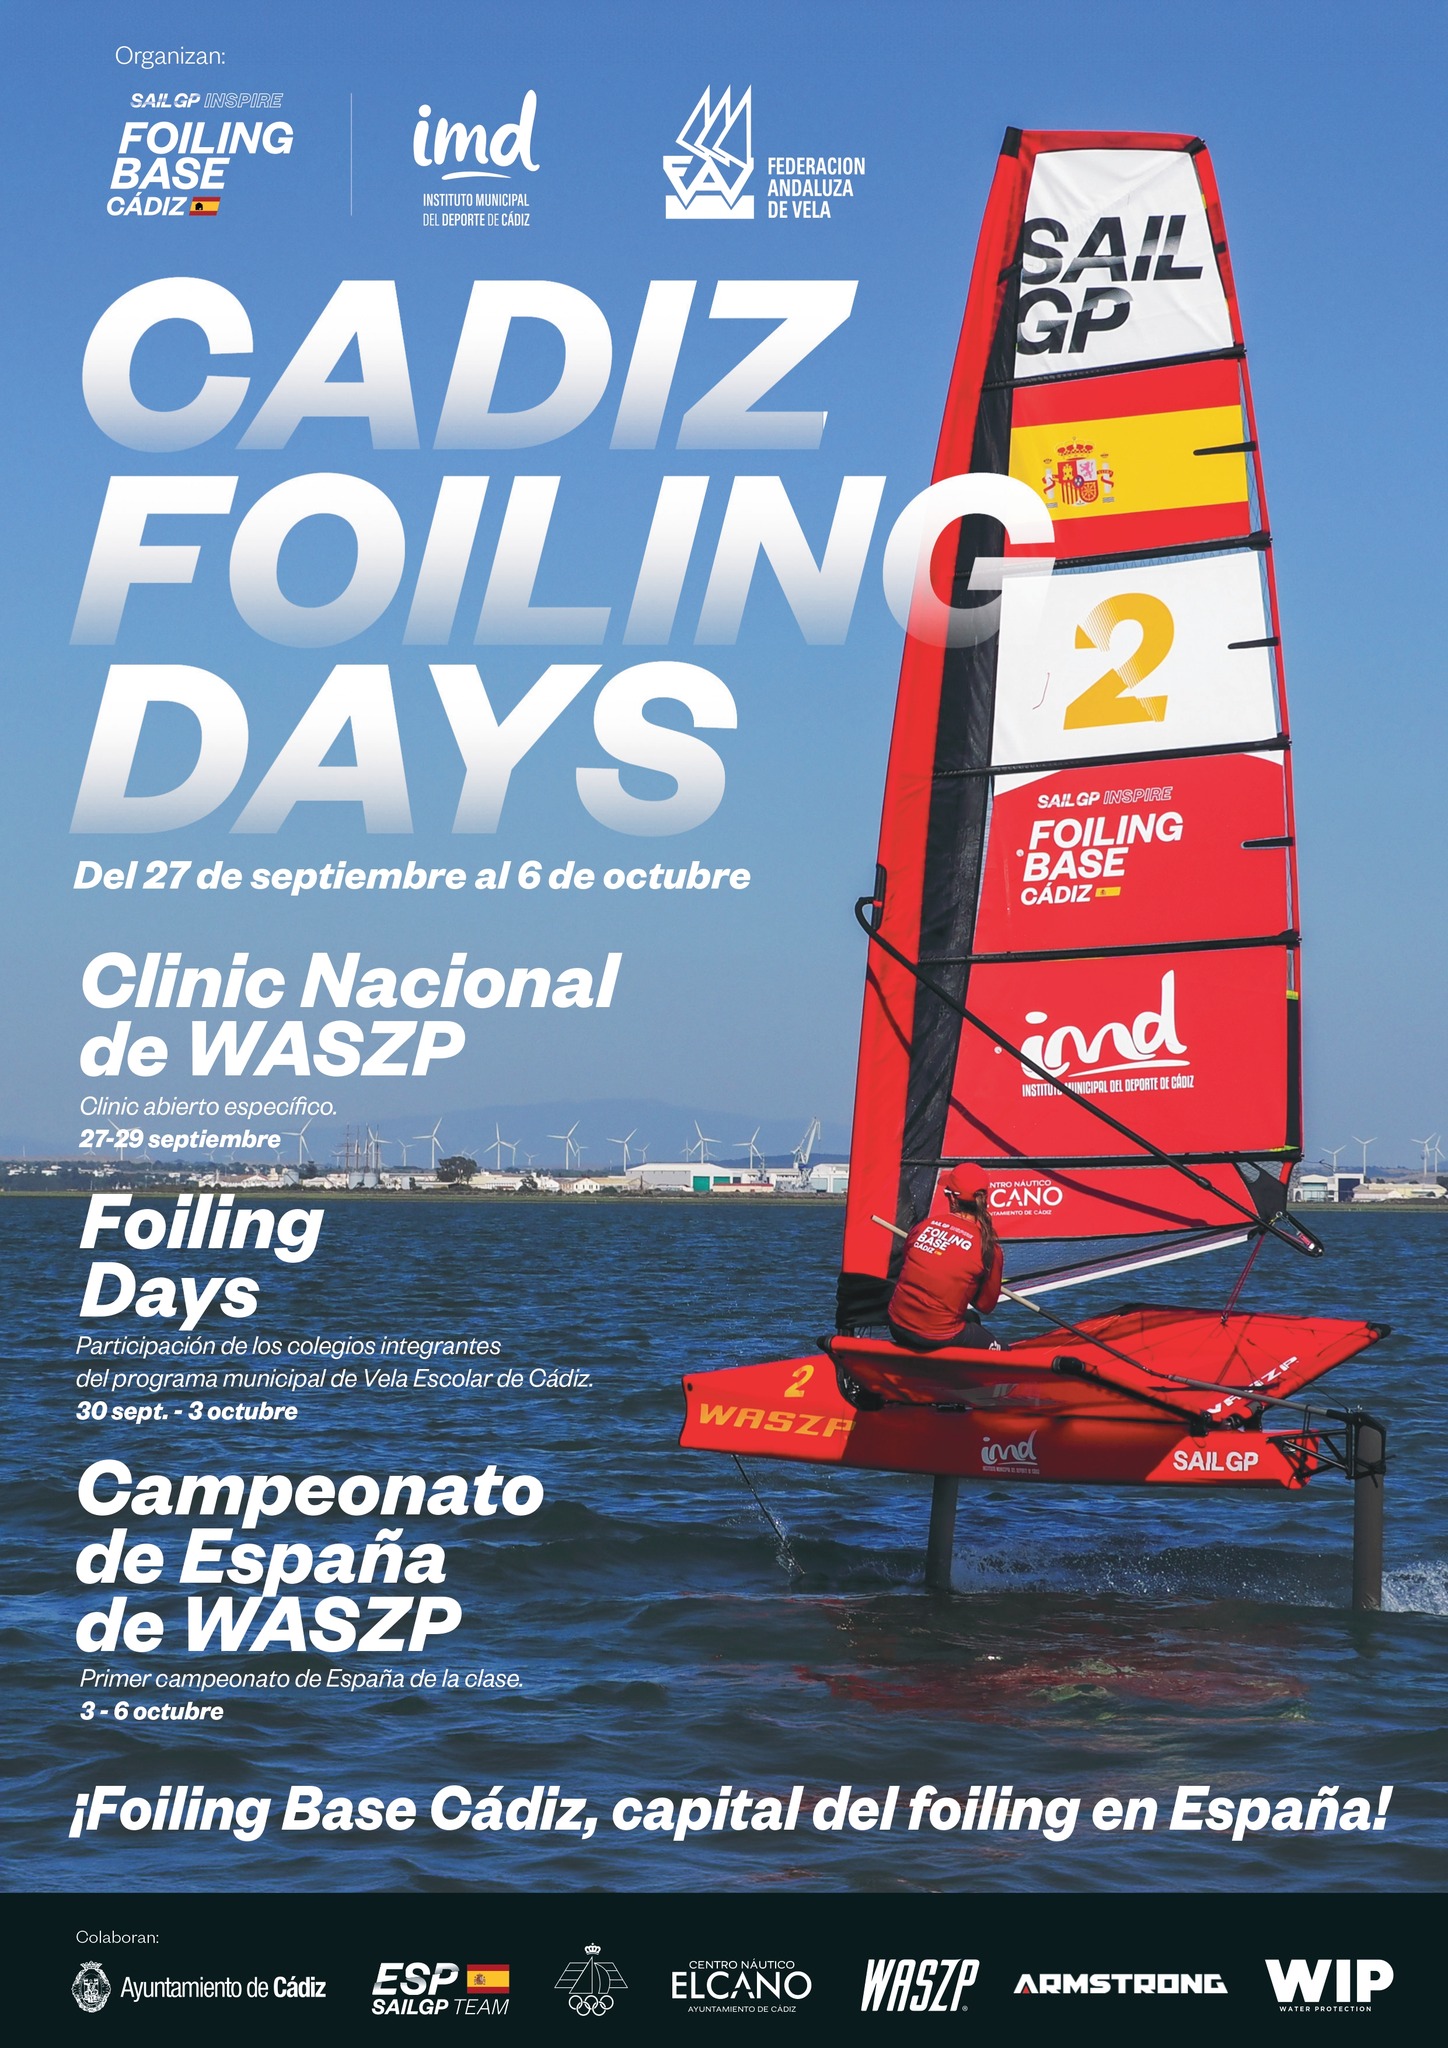 Cádiz foiling days